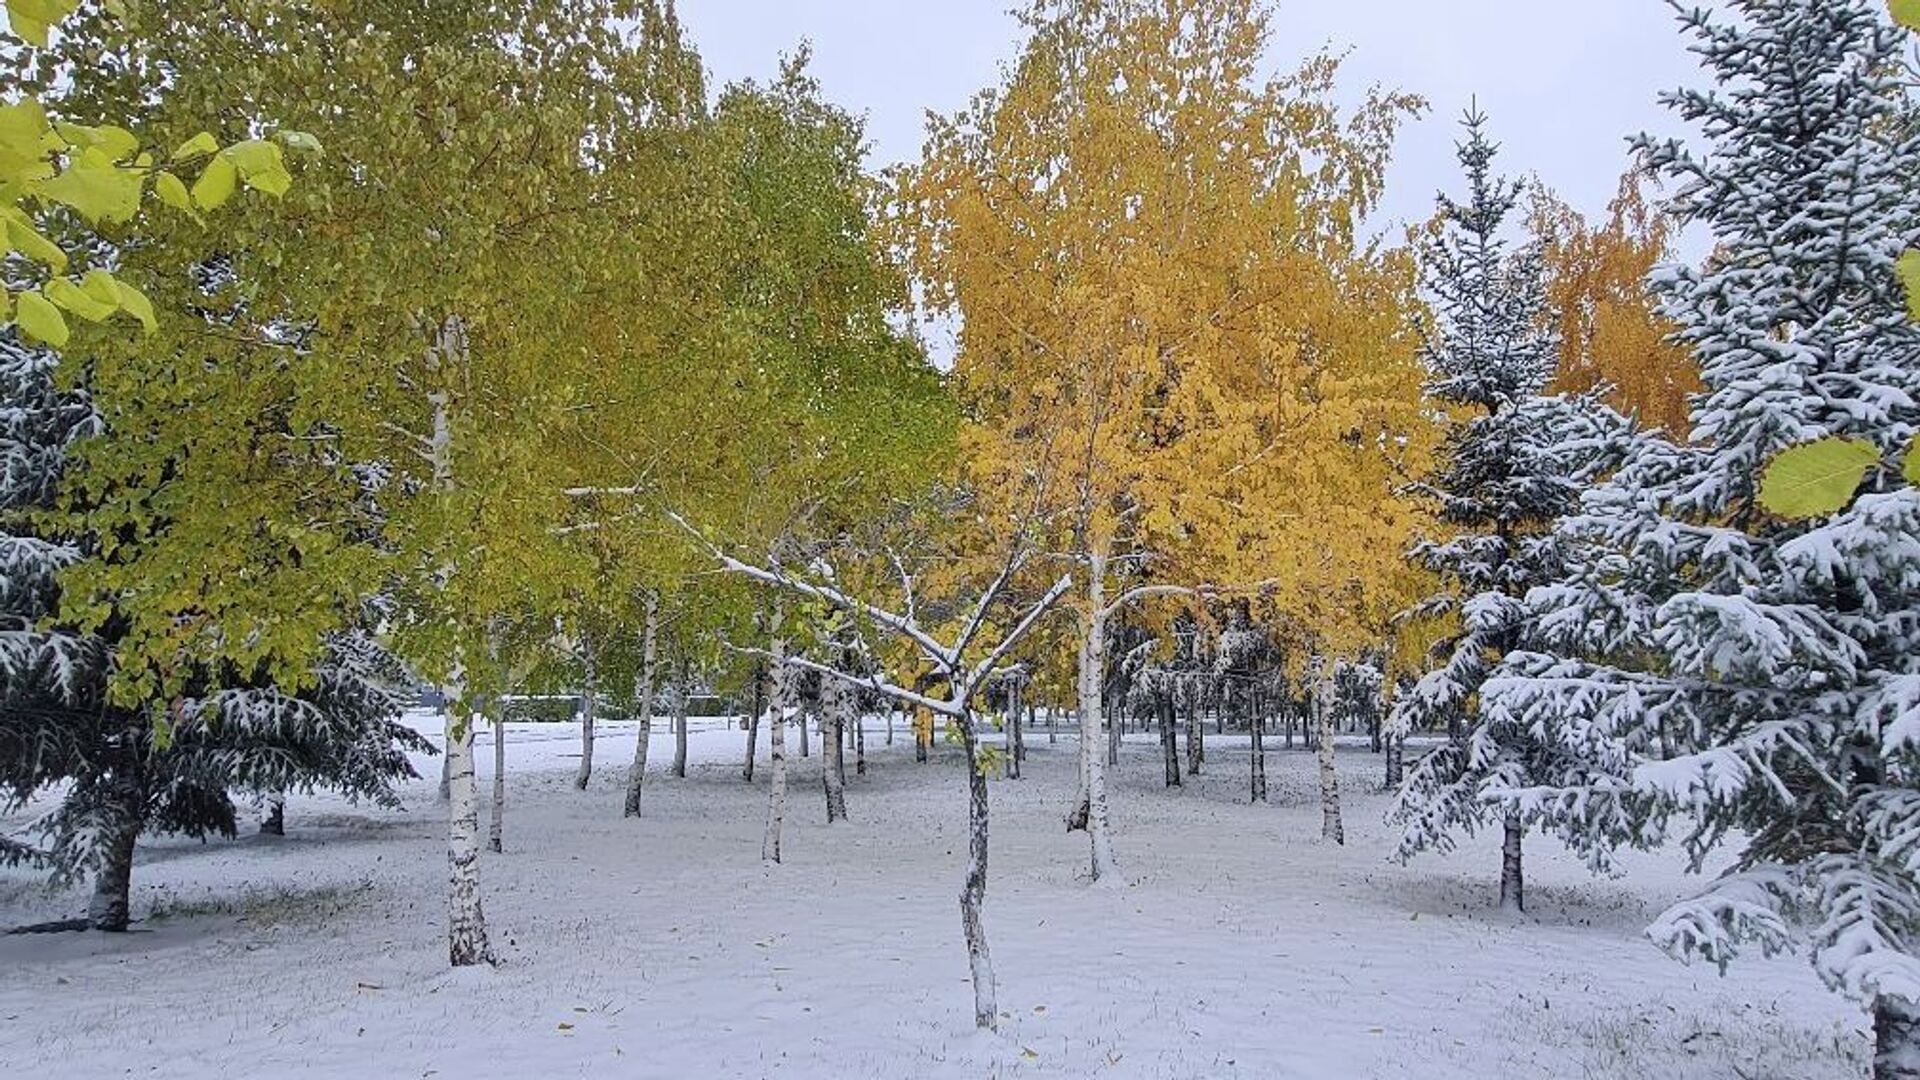 Снежный апокалипсис: Нур-Султан накрыло толстым слоем снега, город встал в пробках - Sputnik Казахстан, 1920, 05.10.2021